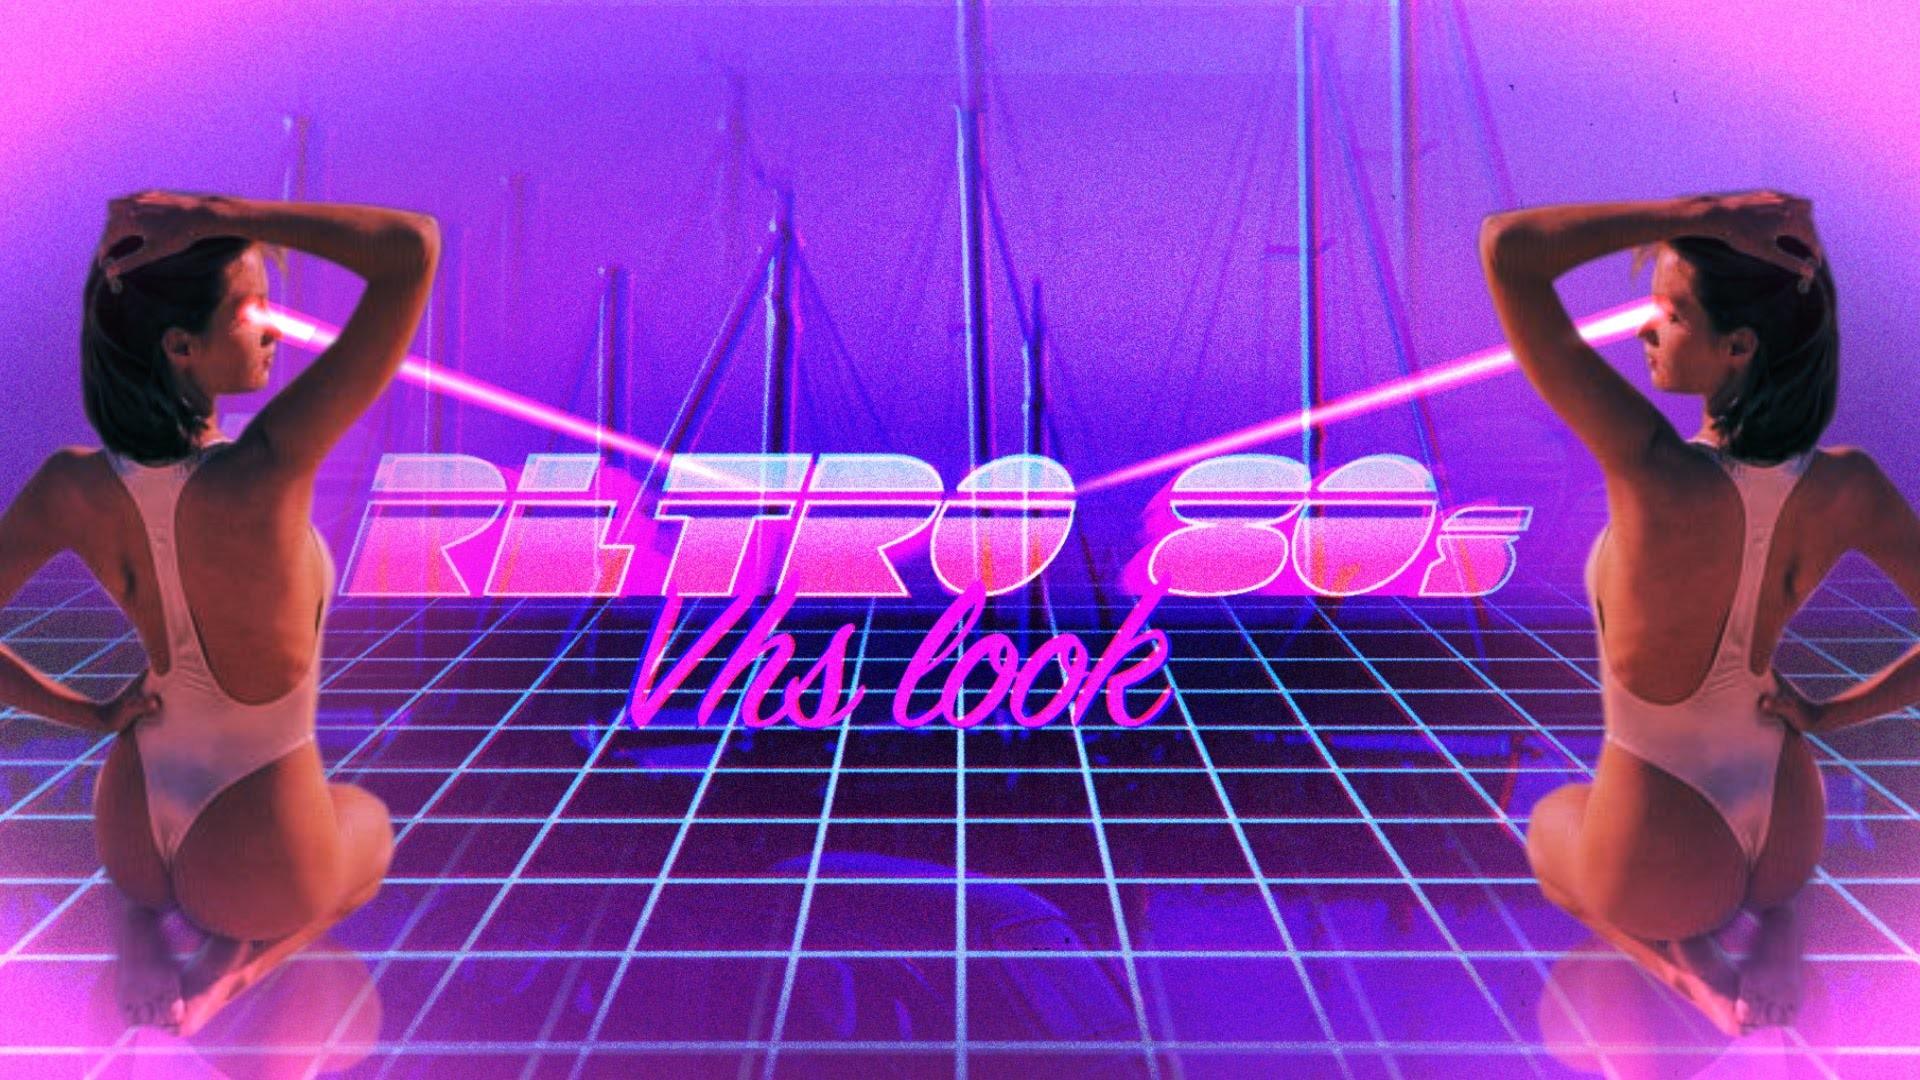 Retro 80s Wallpaper